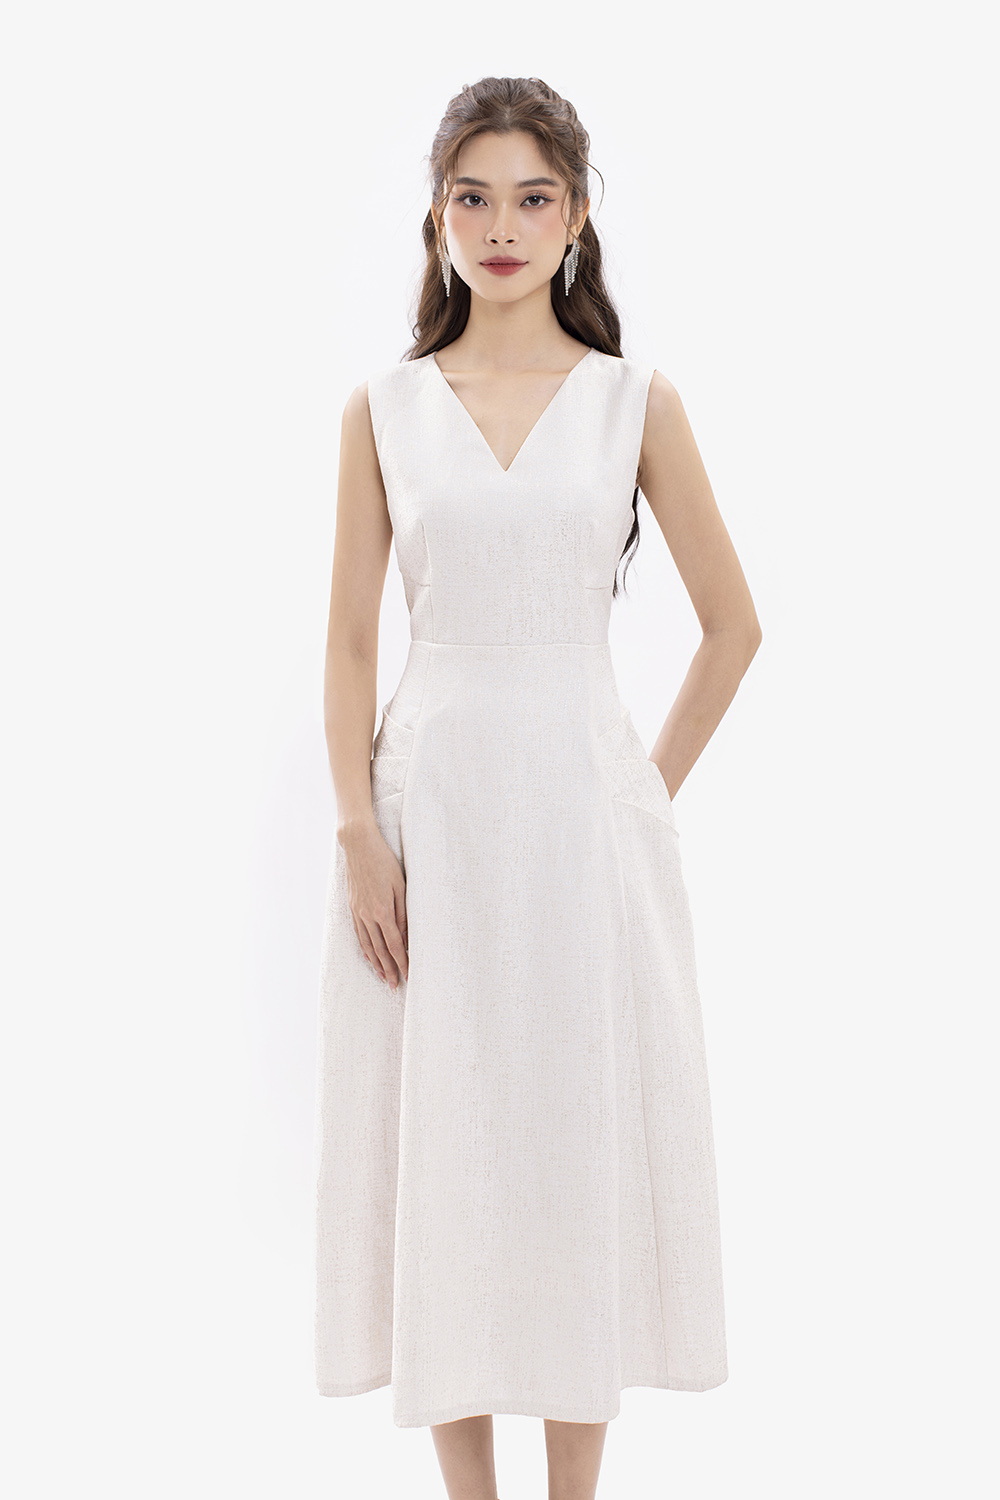 Váy trắng dự tiệc trễ vai thiết kế đơn giản, dễ thương #1088